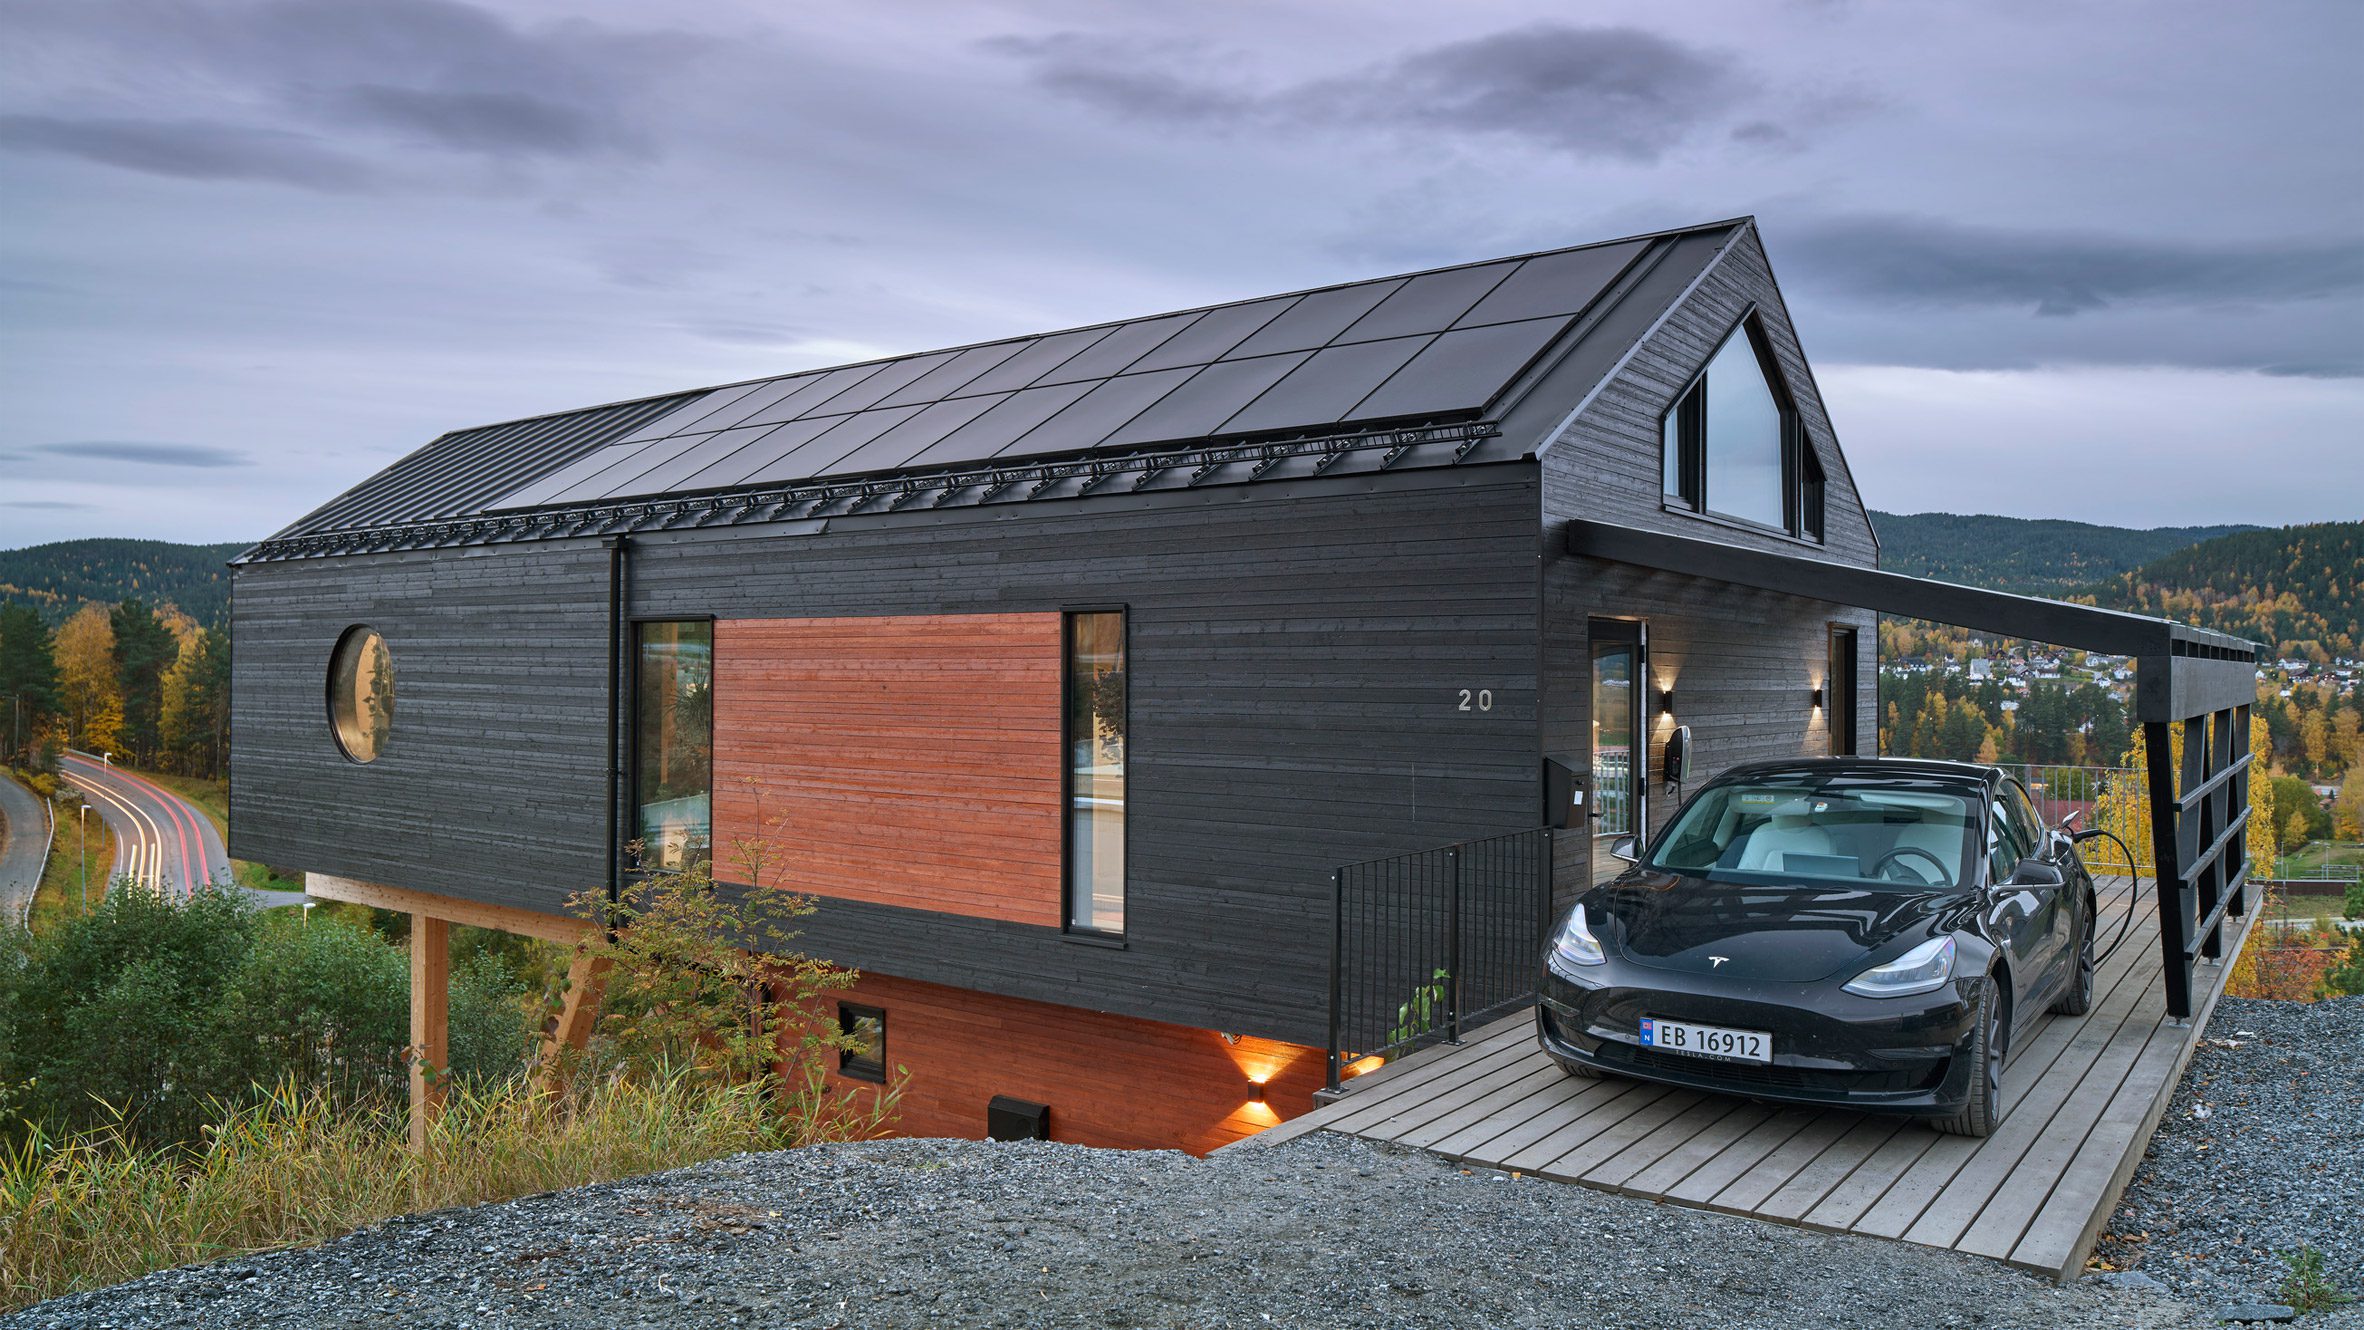 House Dokka overlooks the Norwegian woodland